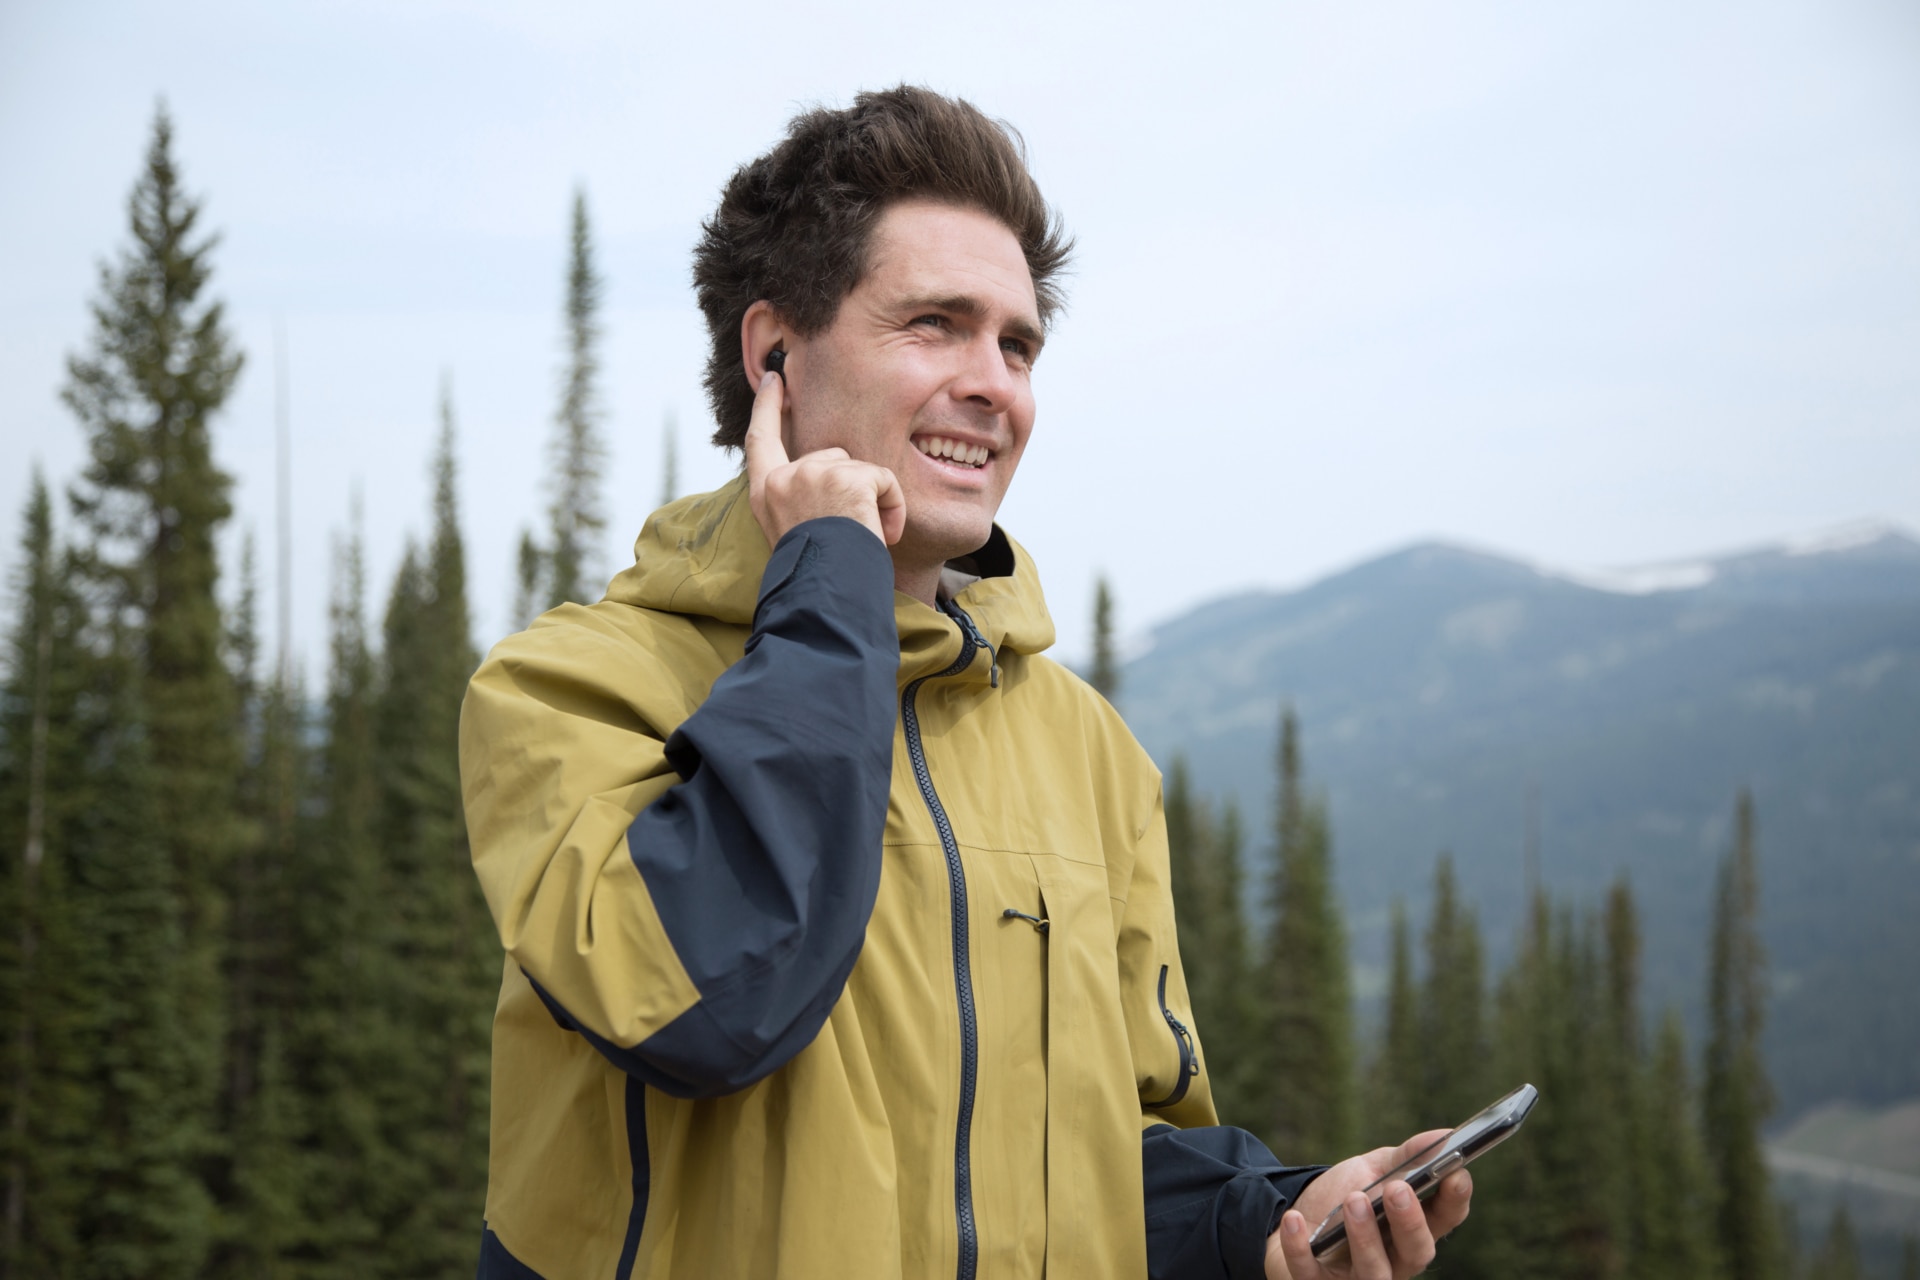 Mann, der ein Virto Marvel Hörsystem trägt, unterhält sich über sein Smartphone − vor einer Berglandschaft.